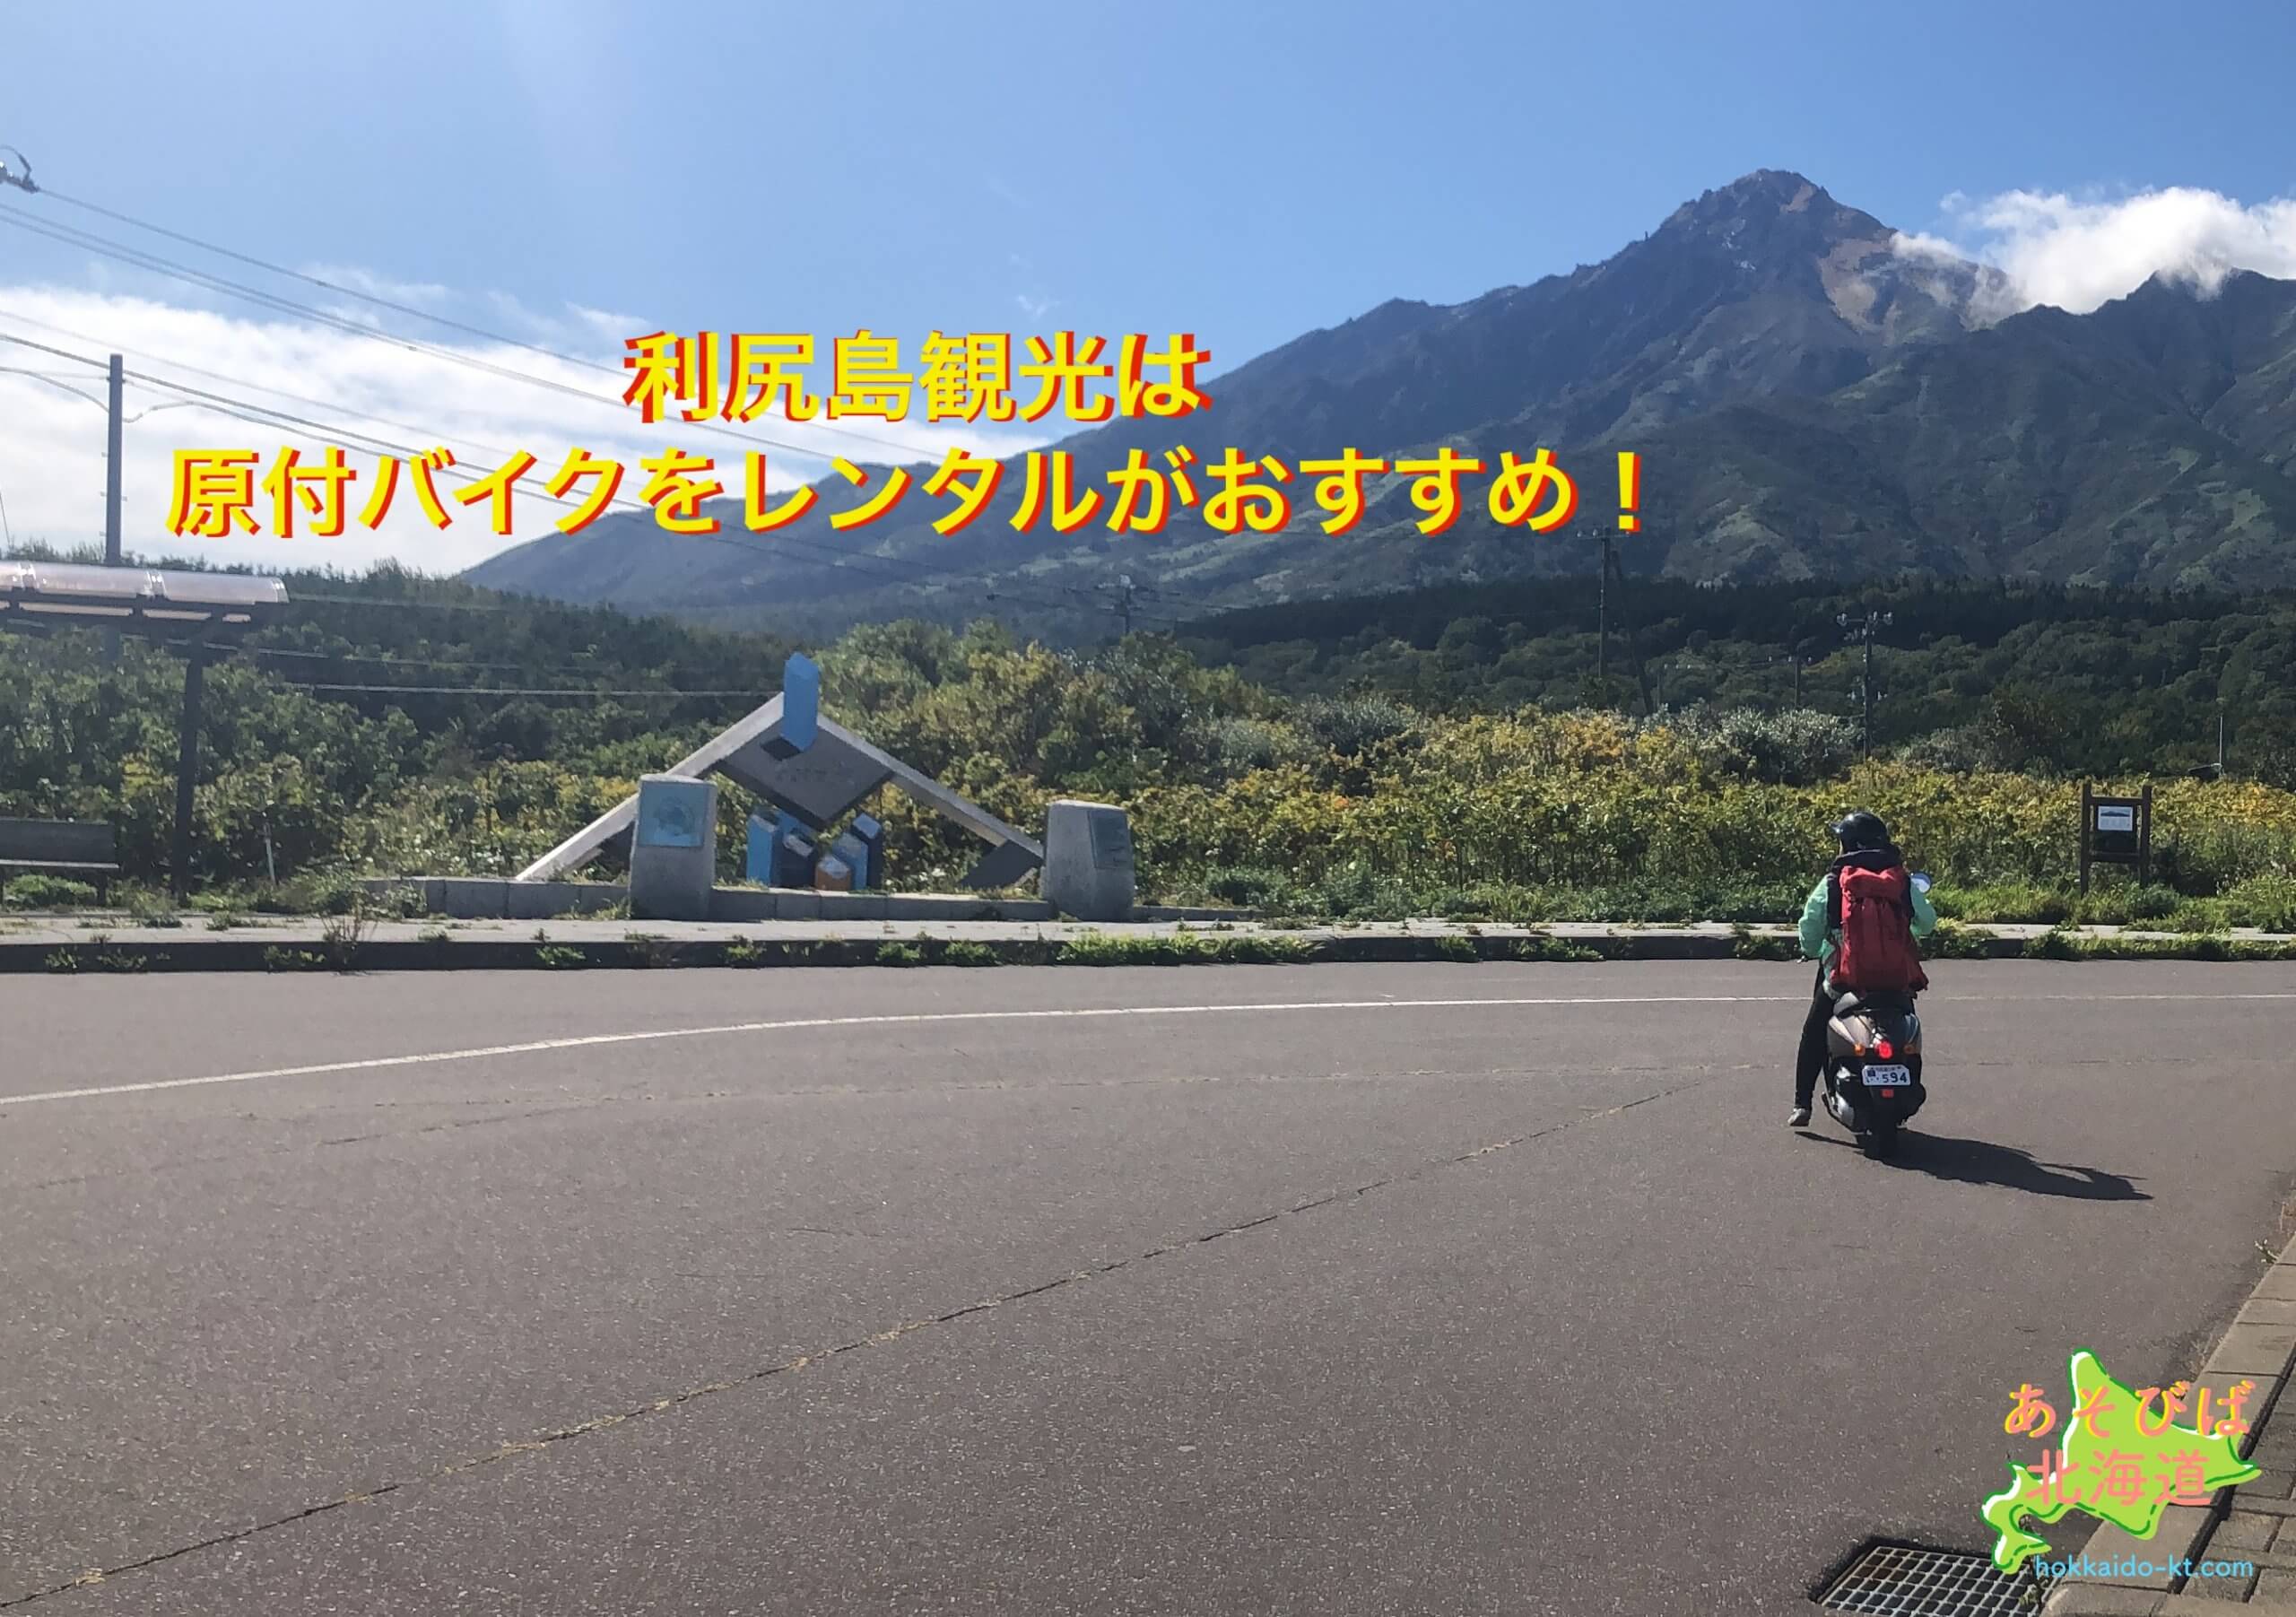 利尻島観光は原付バイクレンタルがおすすめ